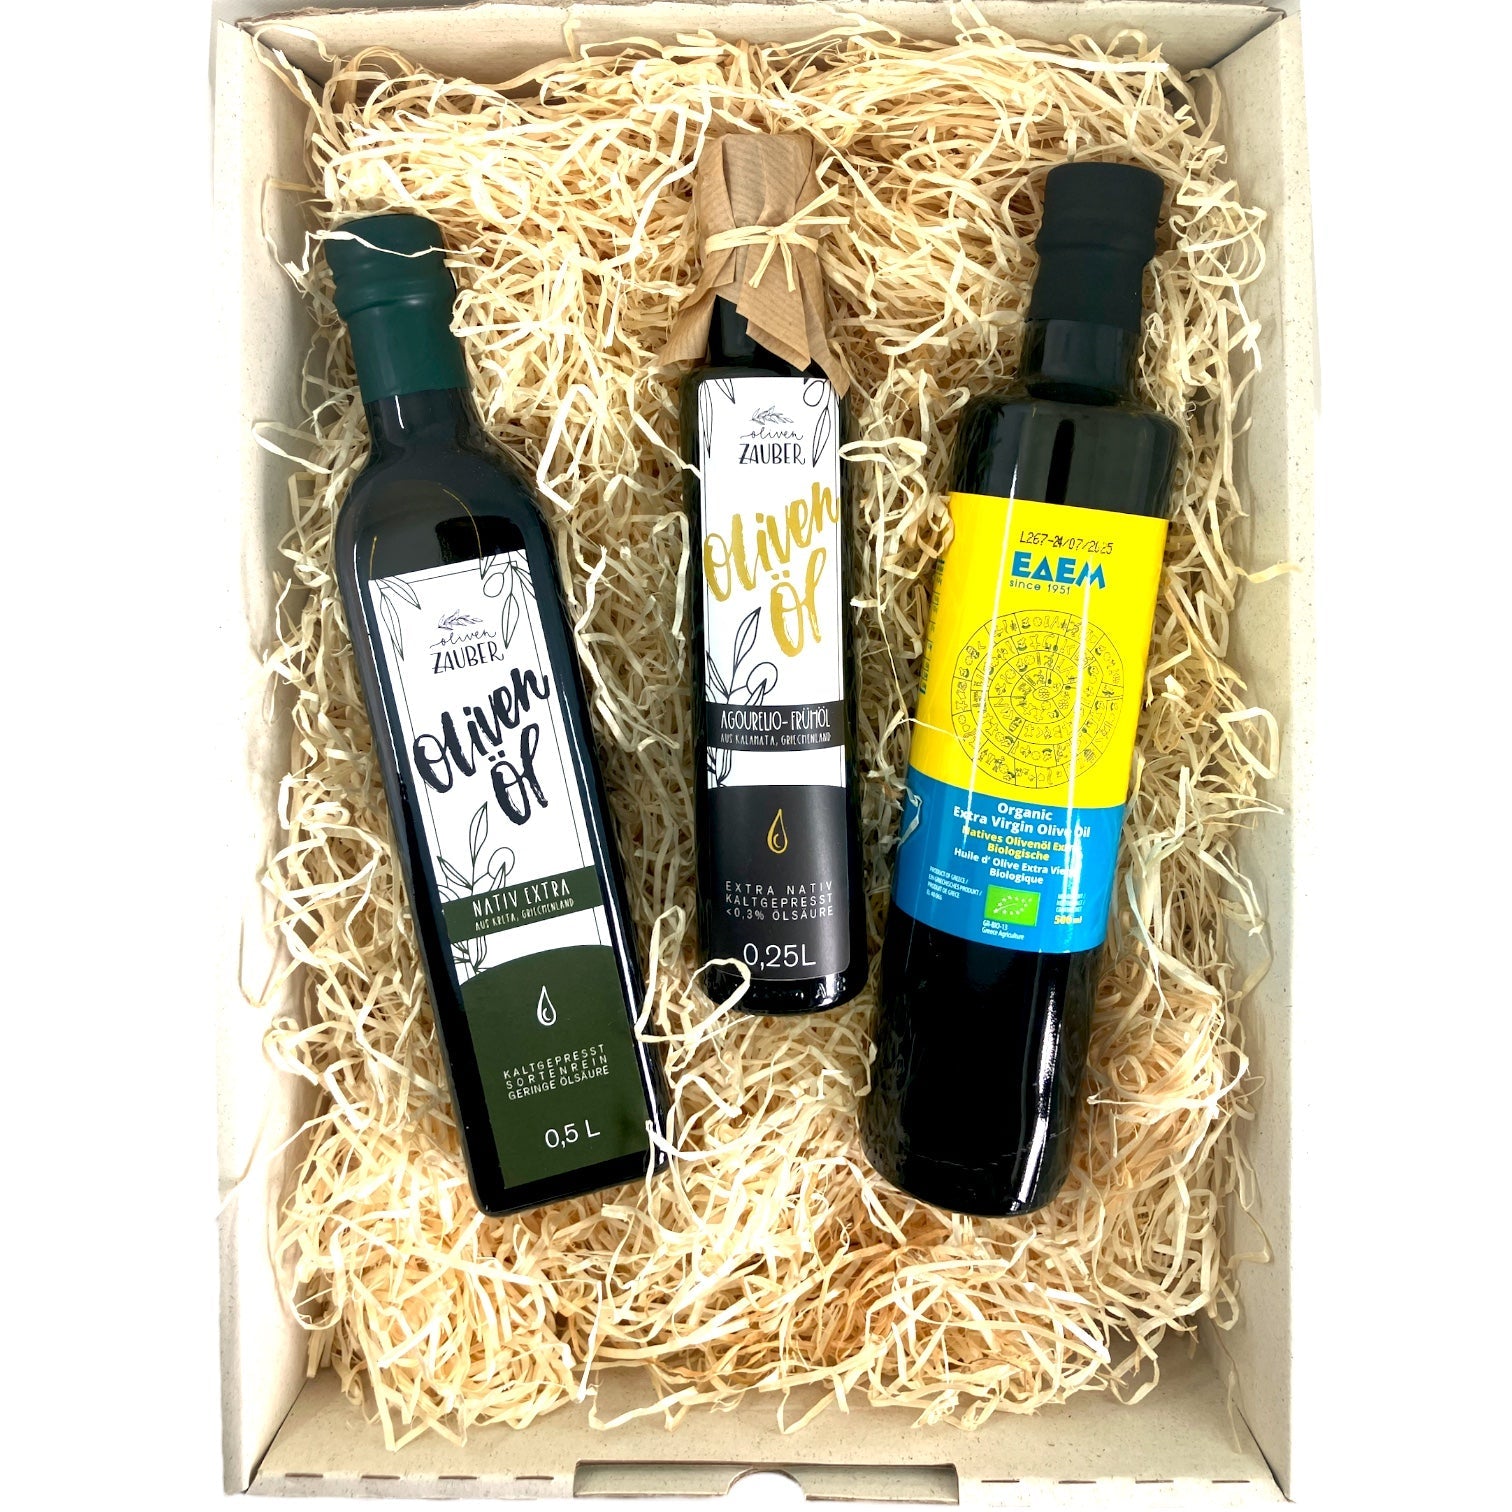 OlivenZauber Geschenkset “Olivenöl aus Kreta” - OlivenZauber - Olivenöl neu erleben